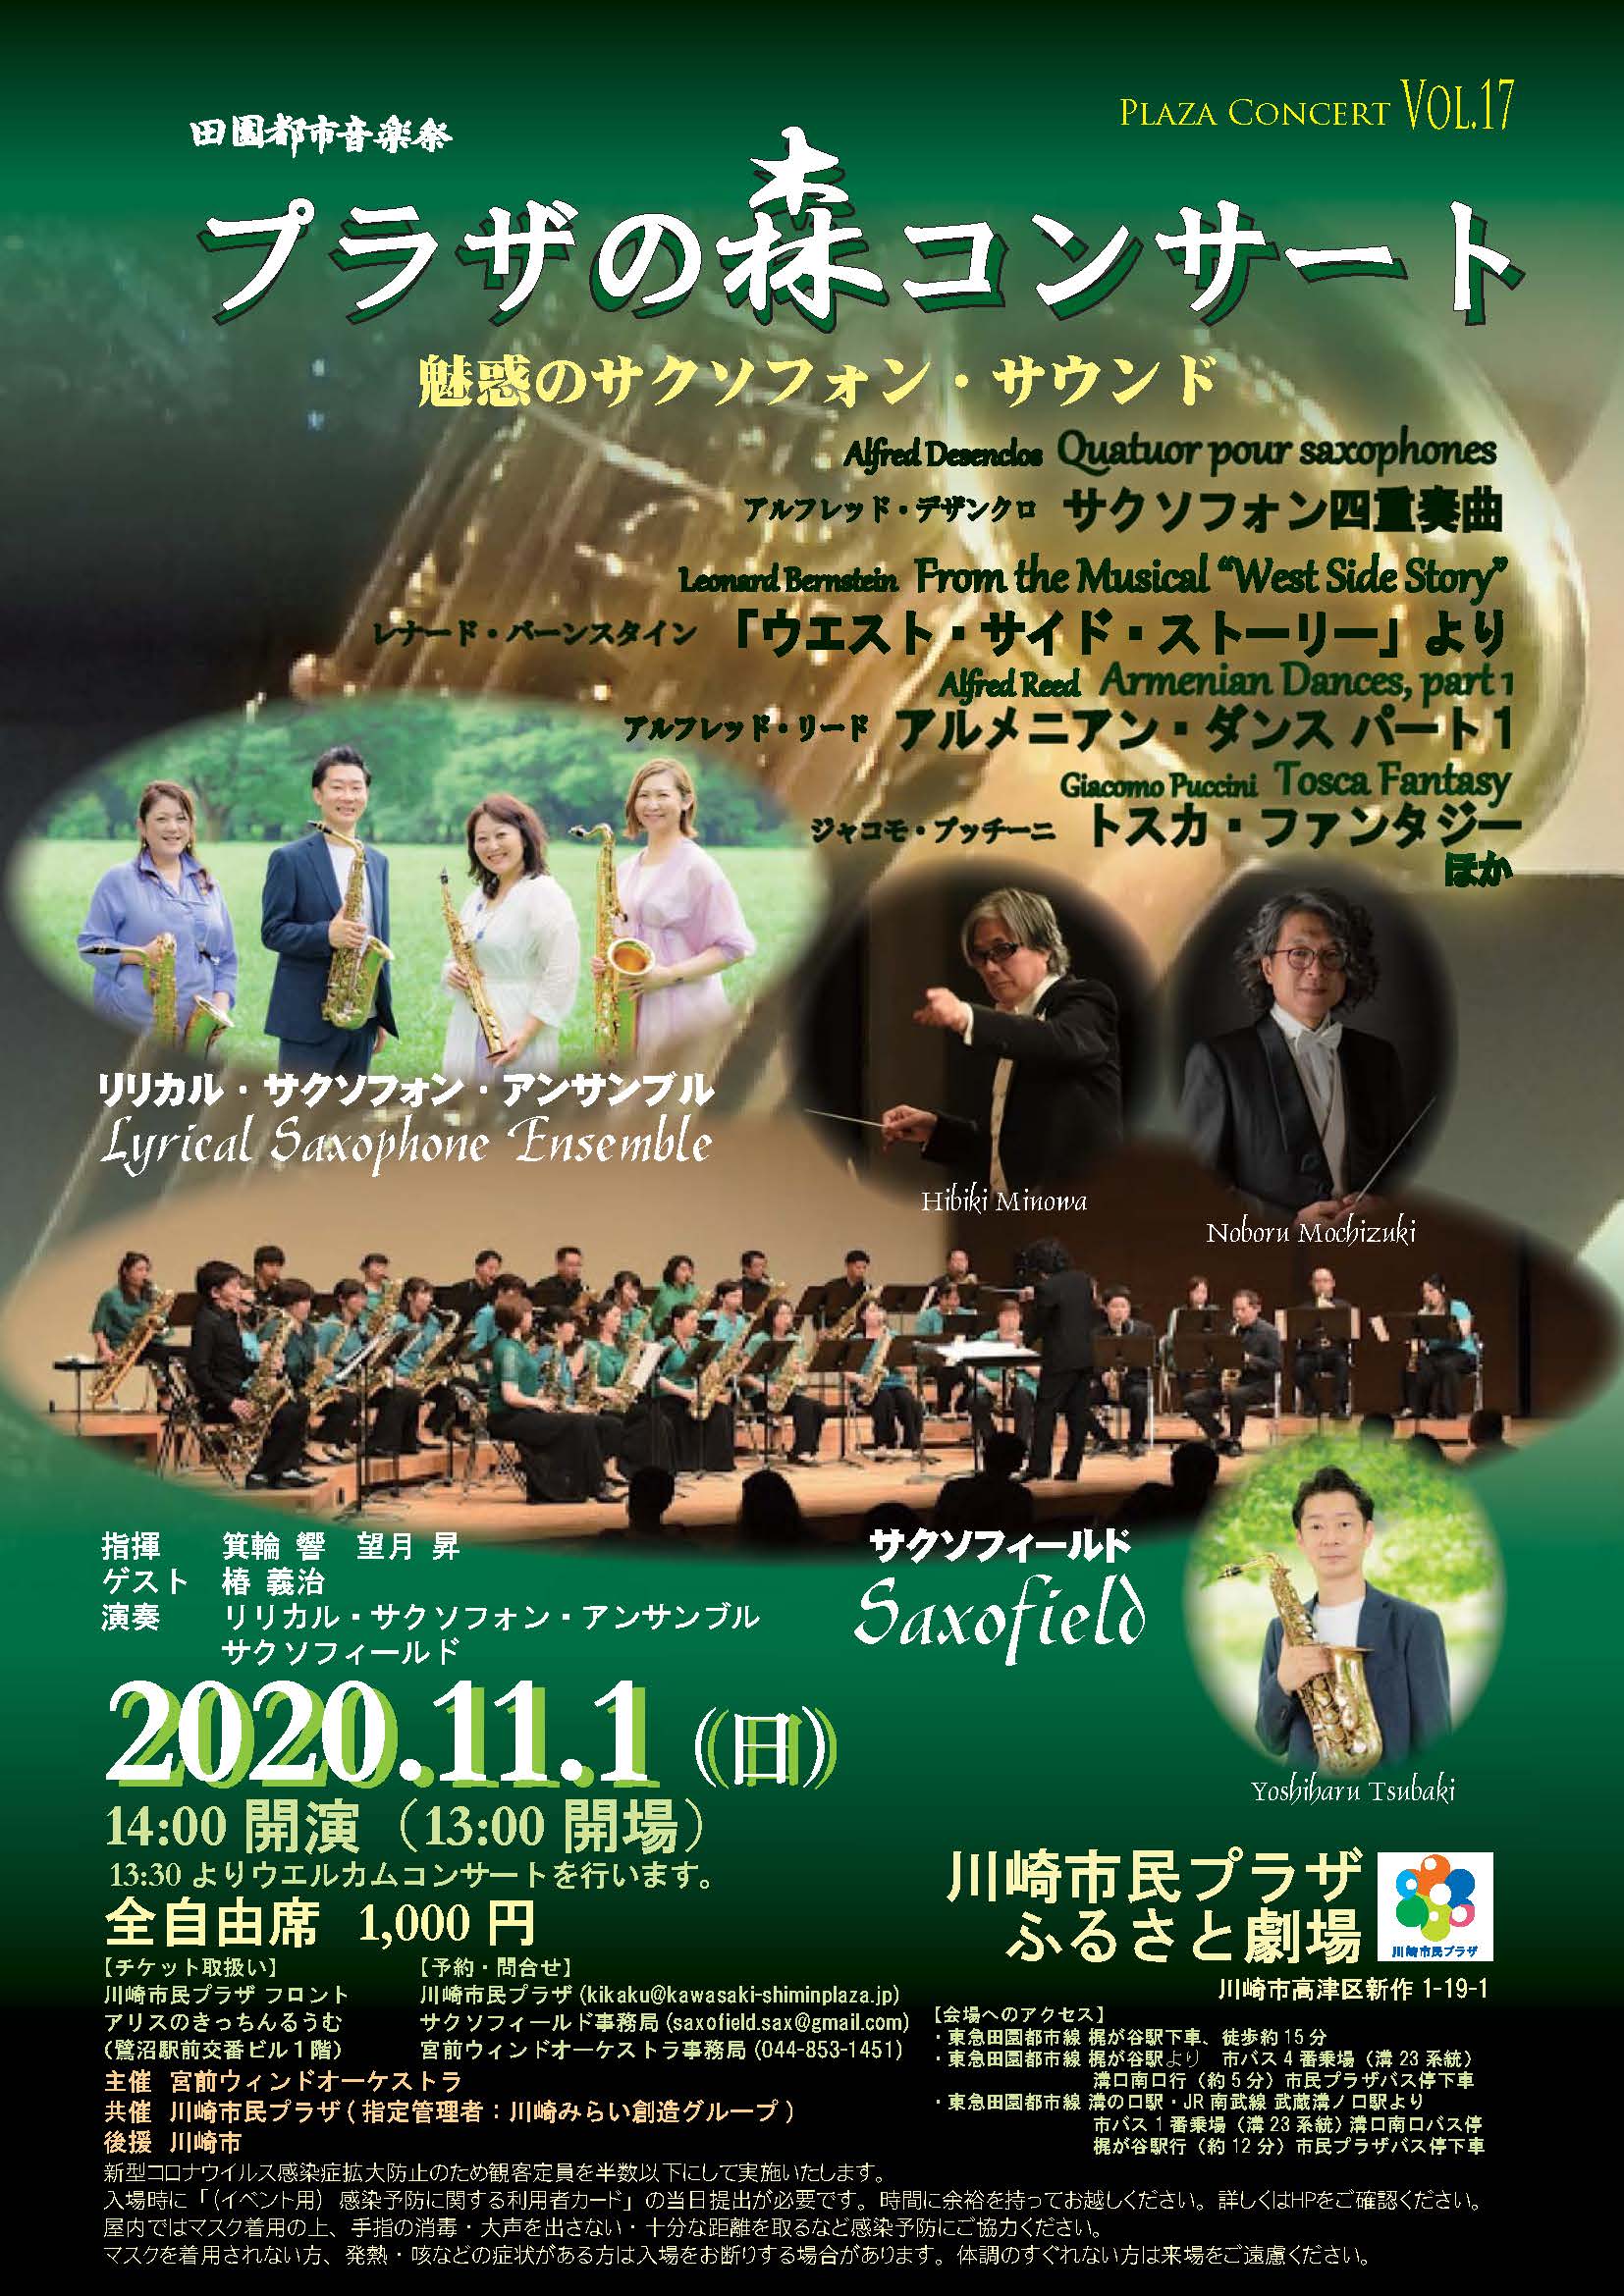 【2020年11月1日】プラザの森コンサート